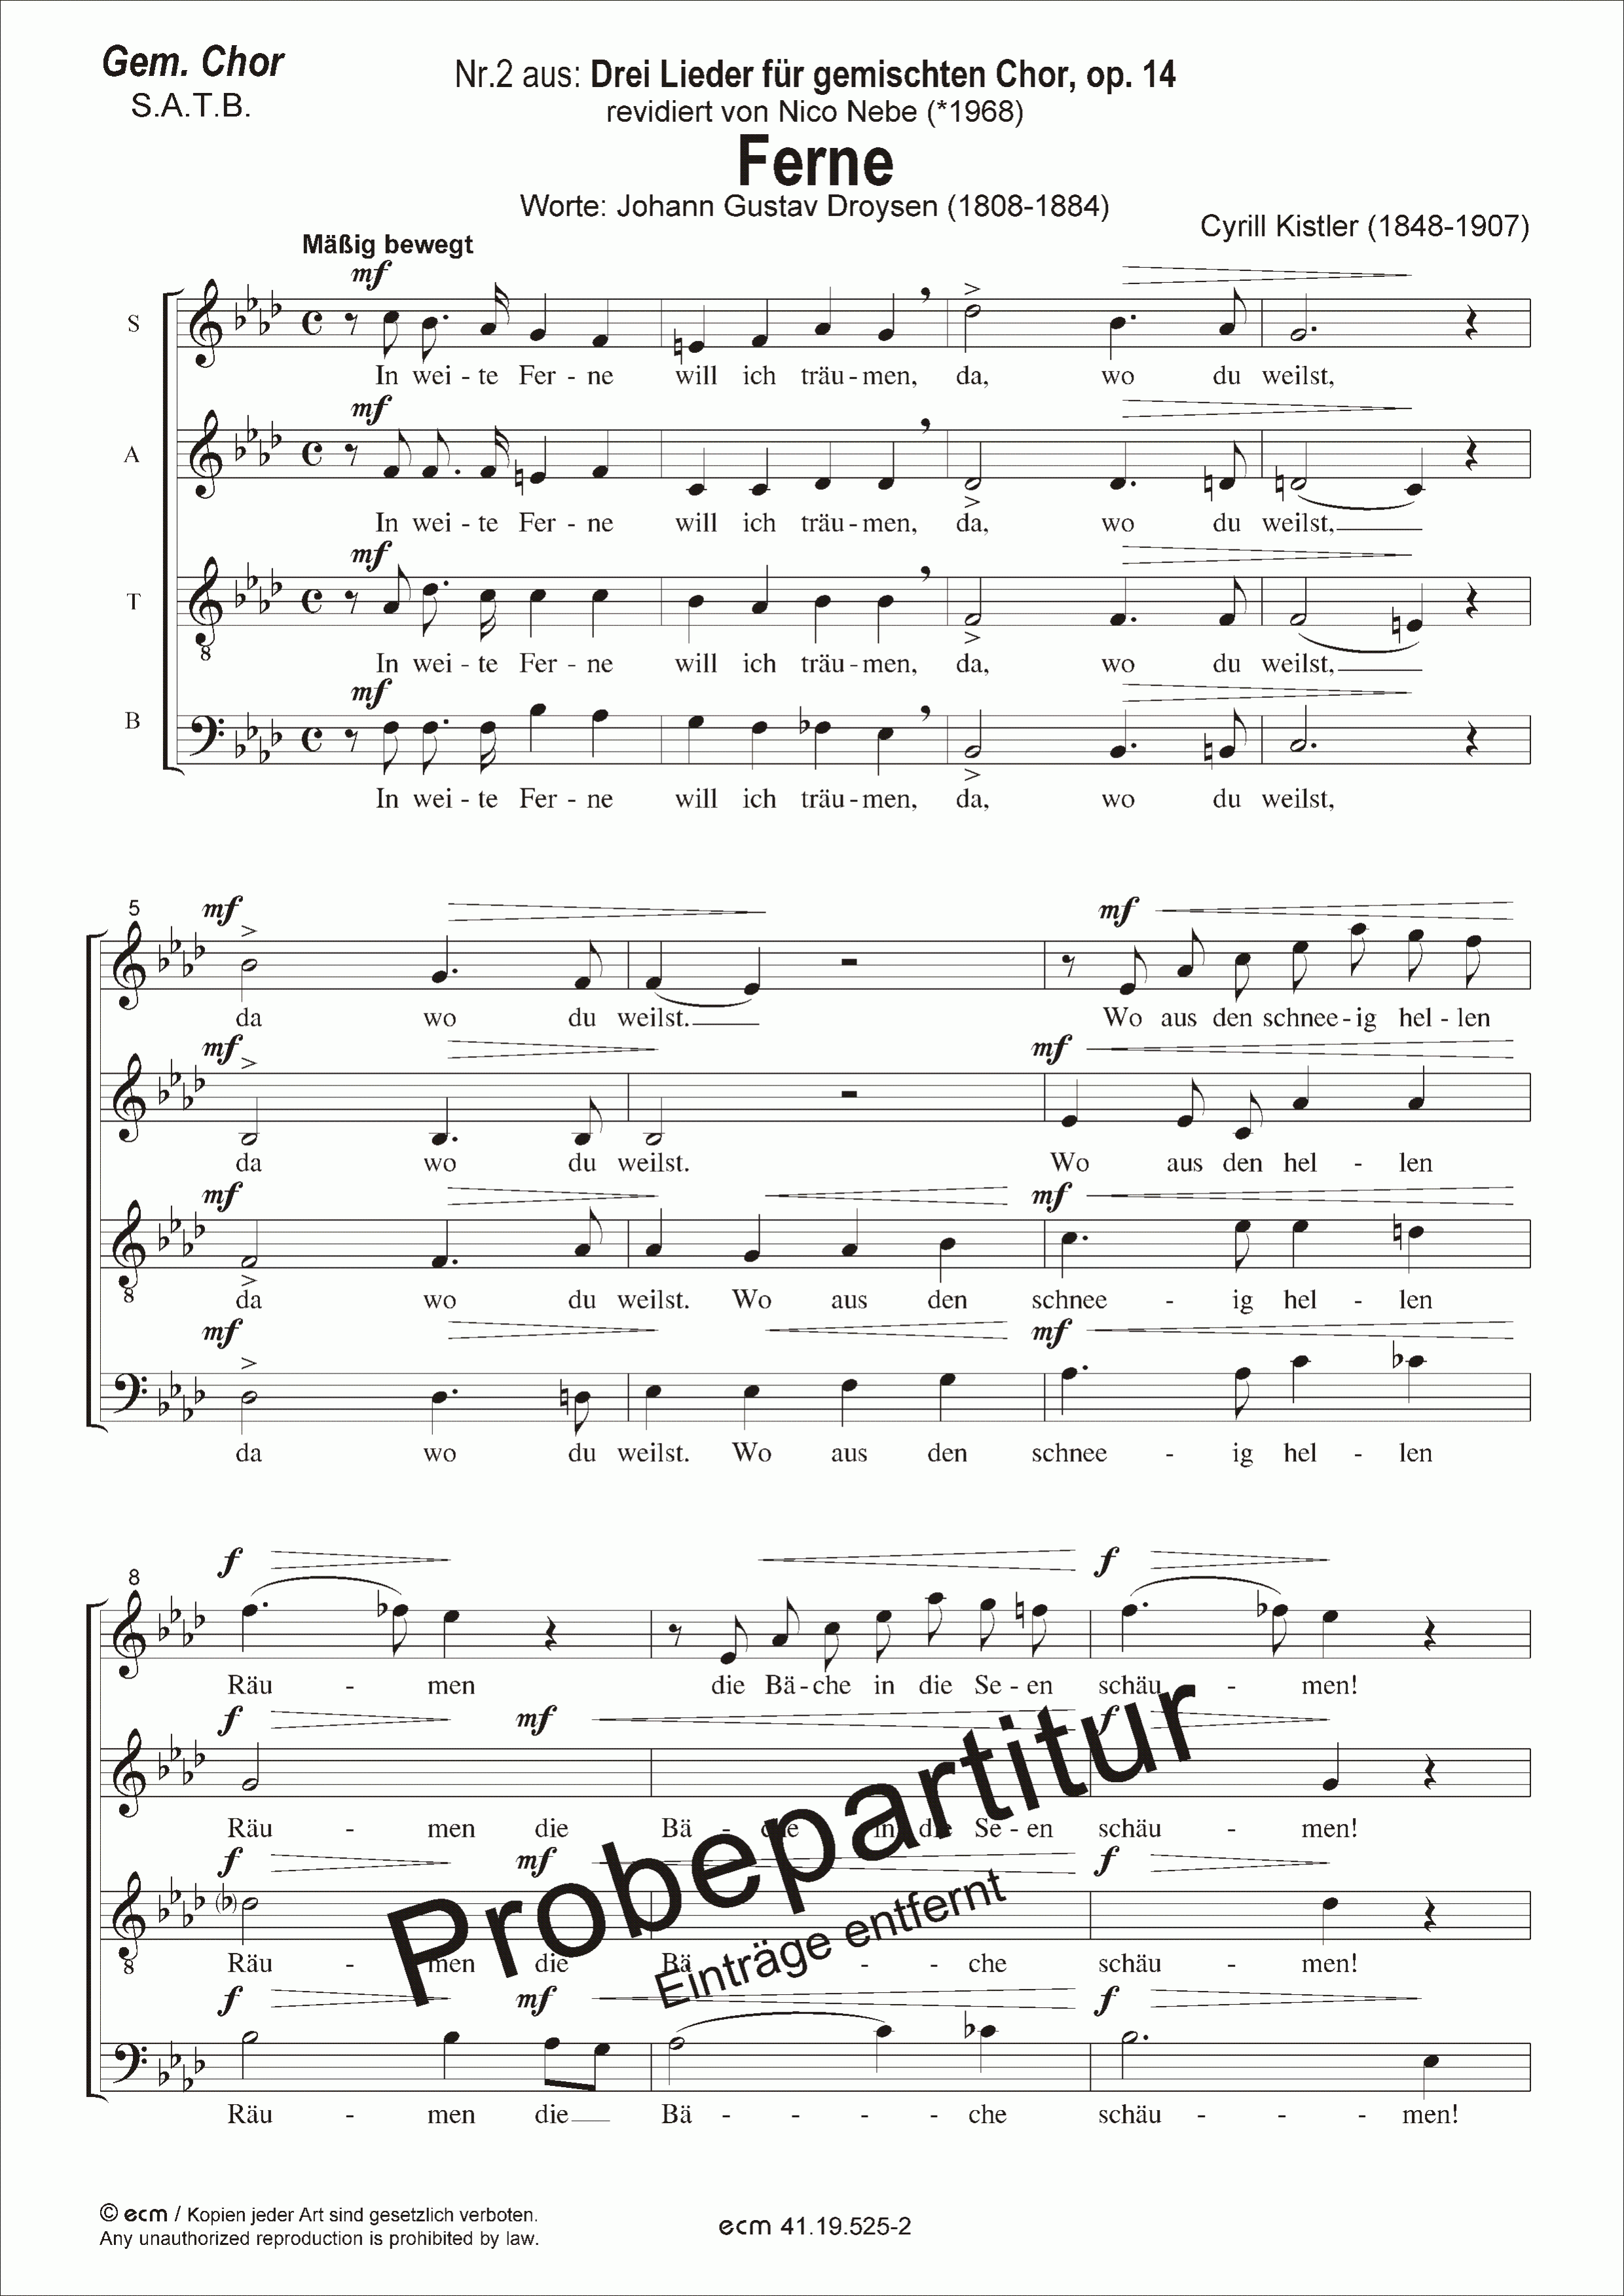 Ferne (op.14 Nr.2)